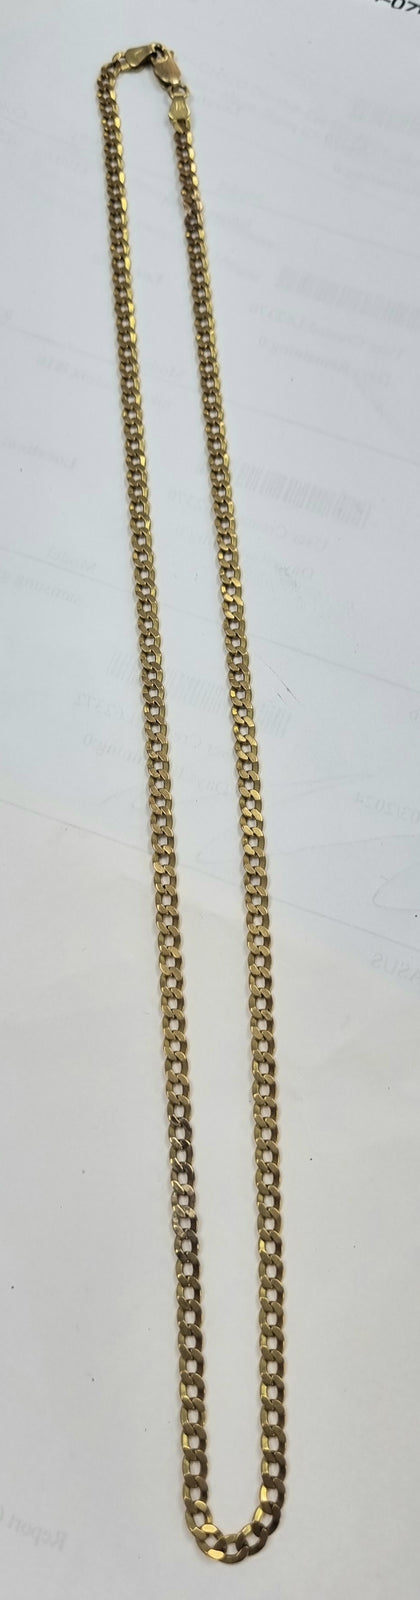 9ct Gold Curb Chain 21